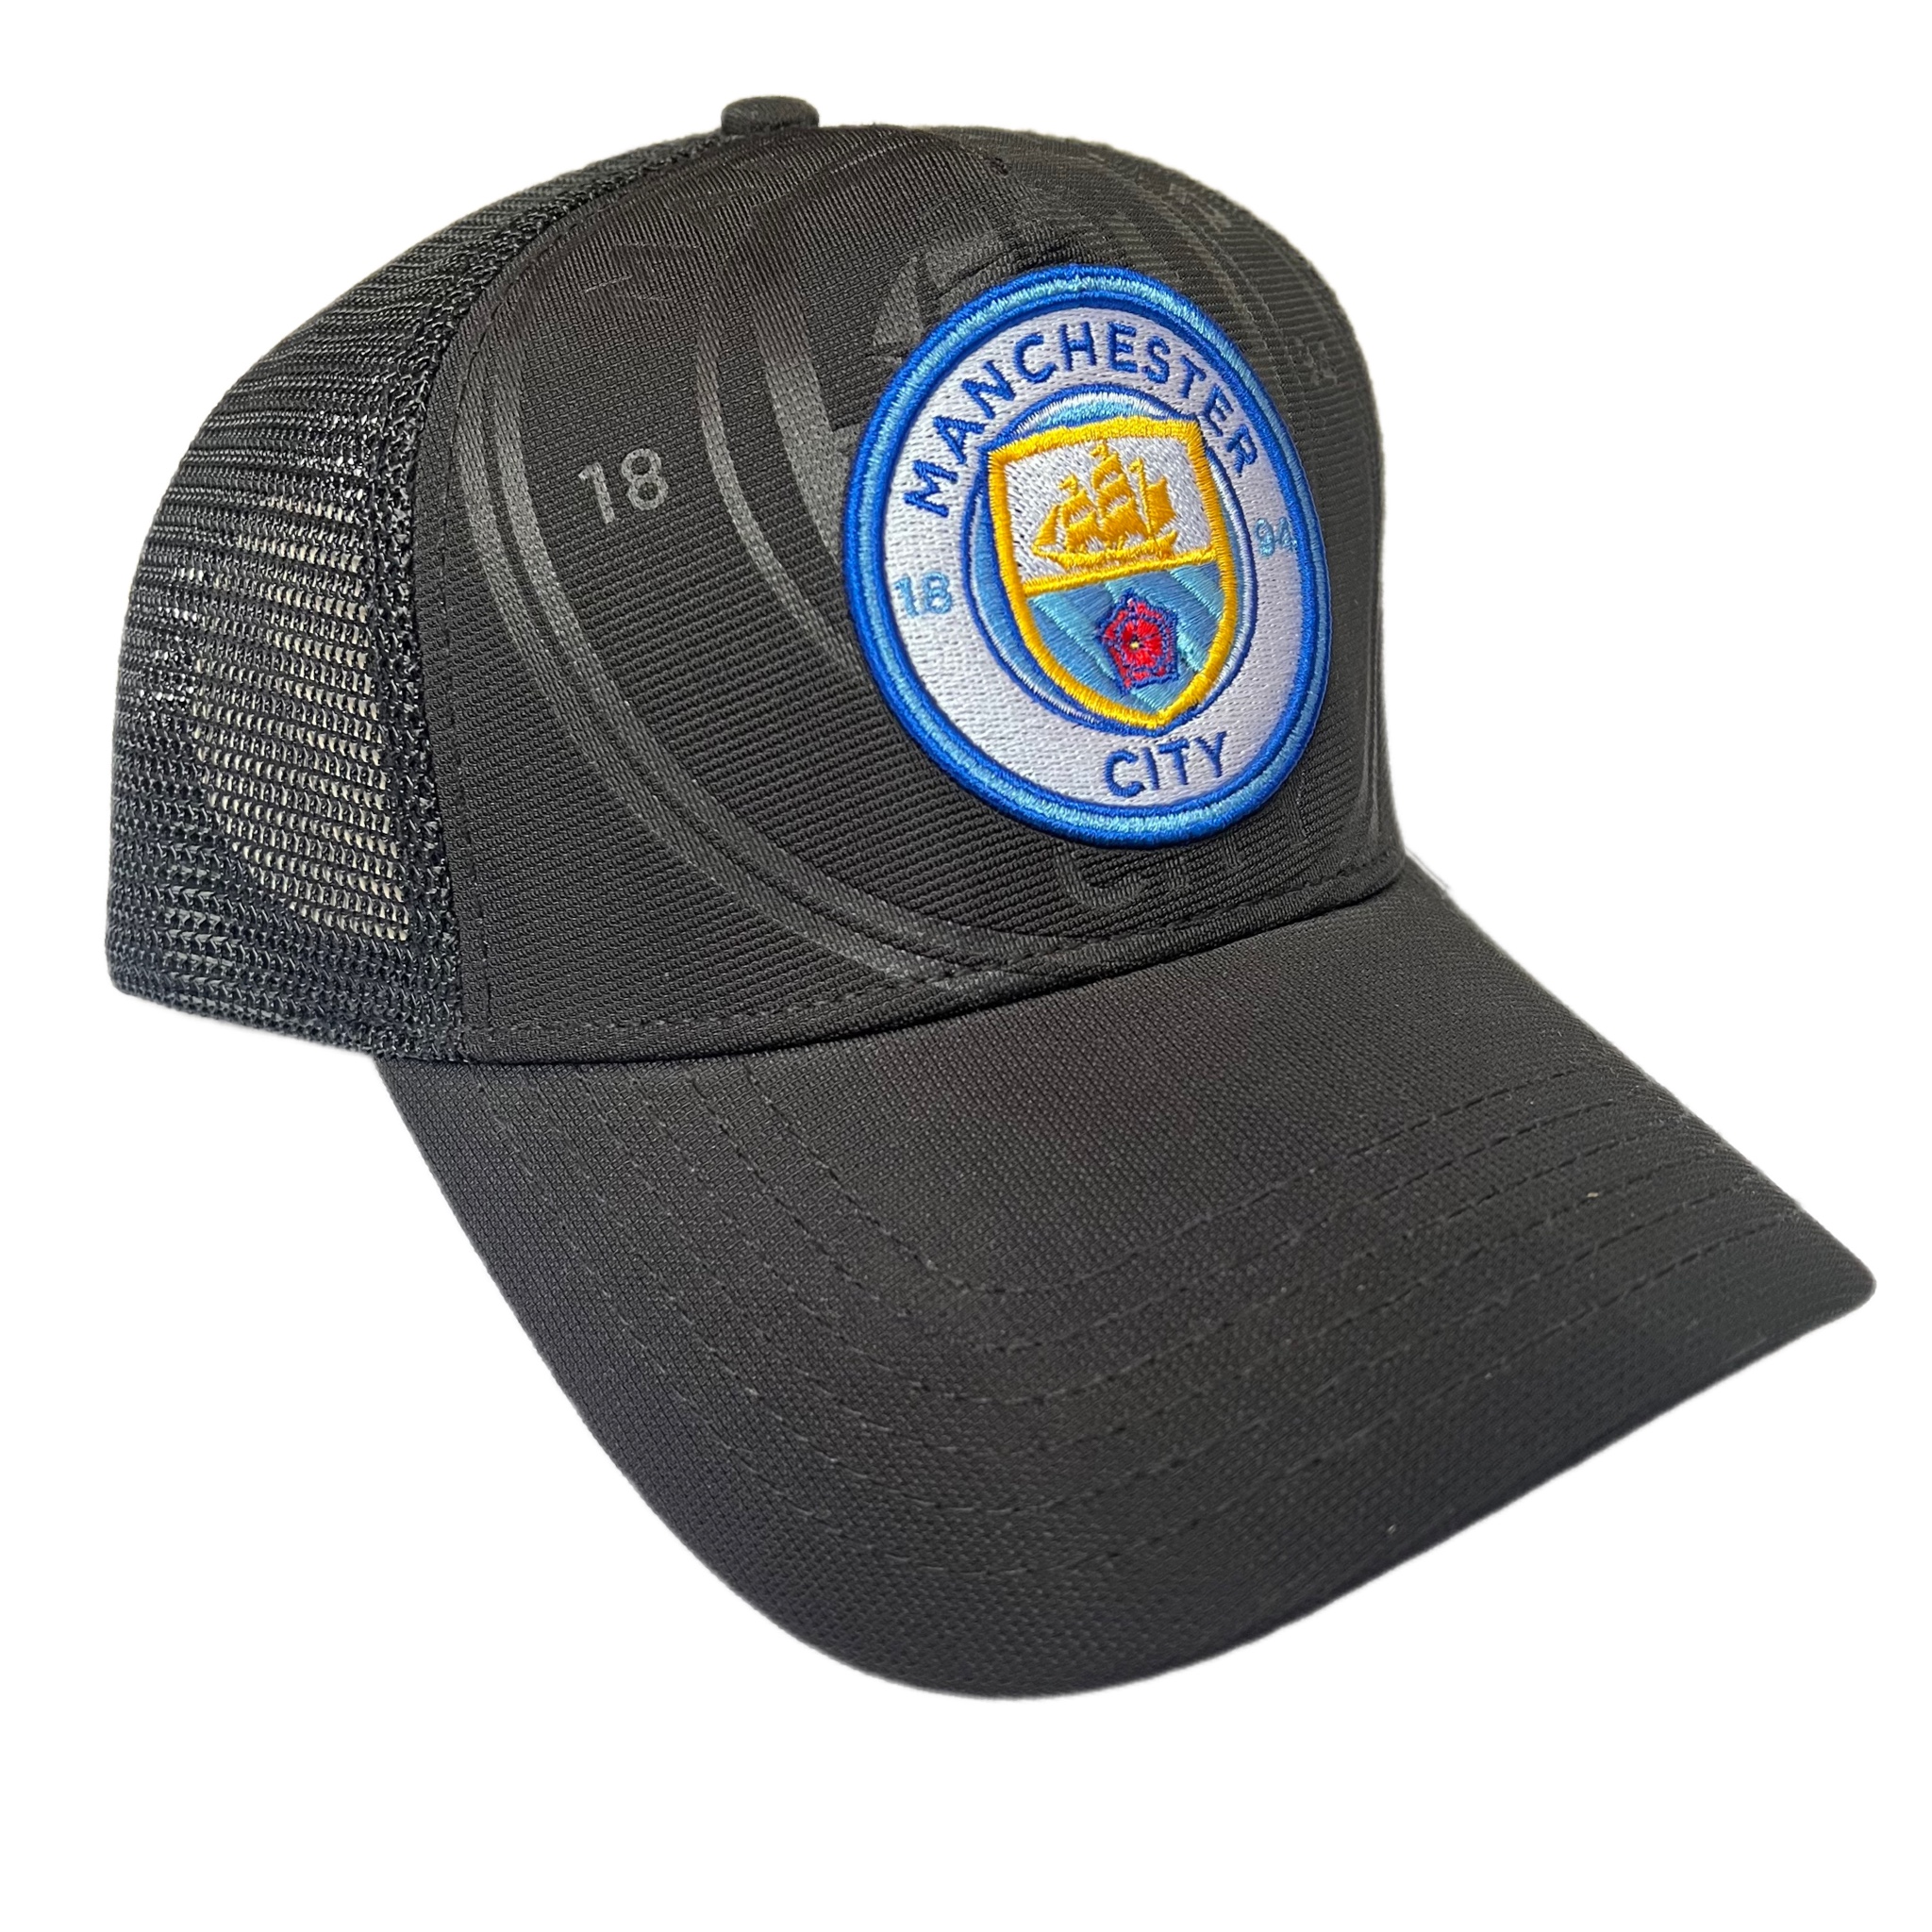 نکته خرید - قیمت روز کلاه کپ مدل باشگاهی Manchester City خرید